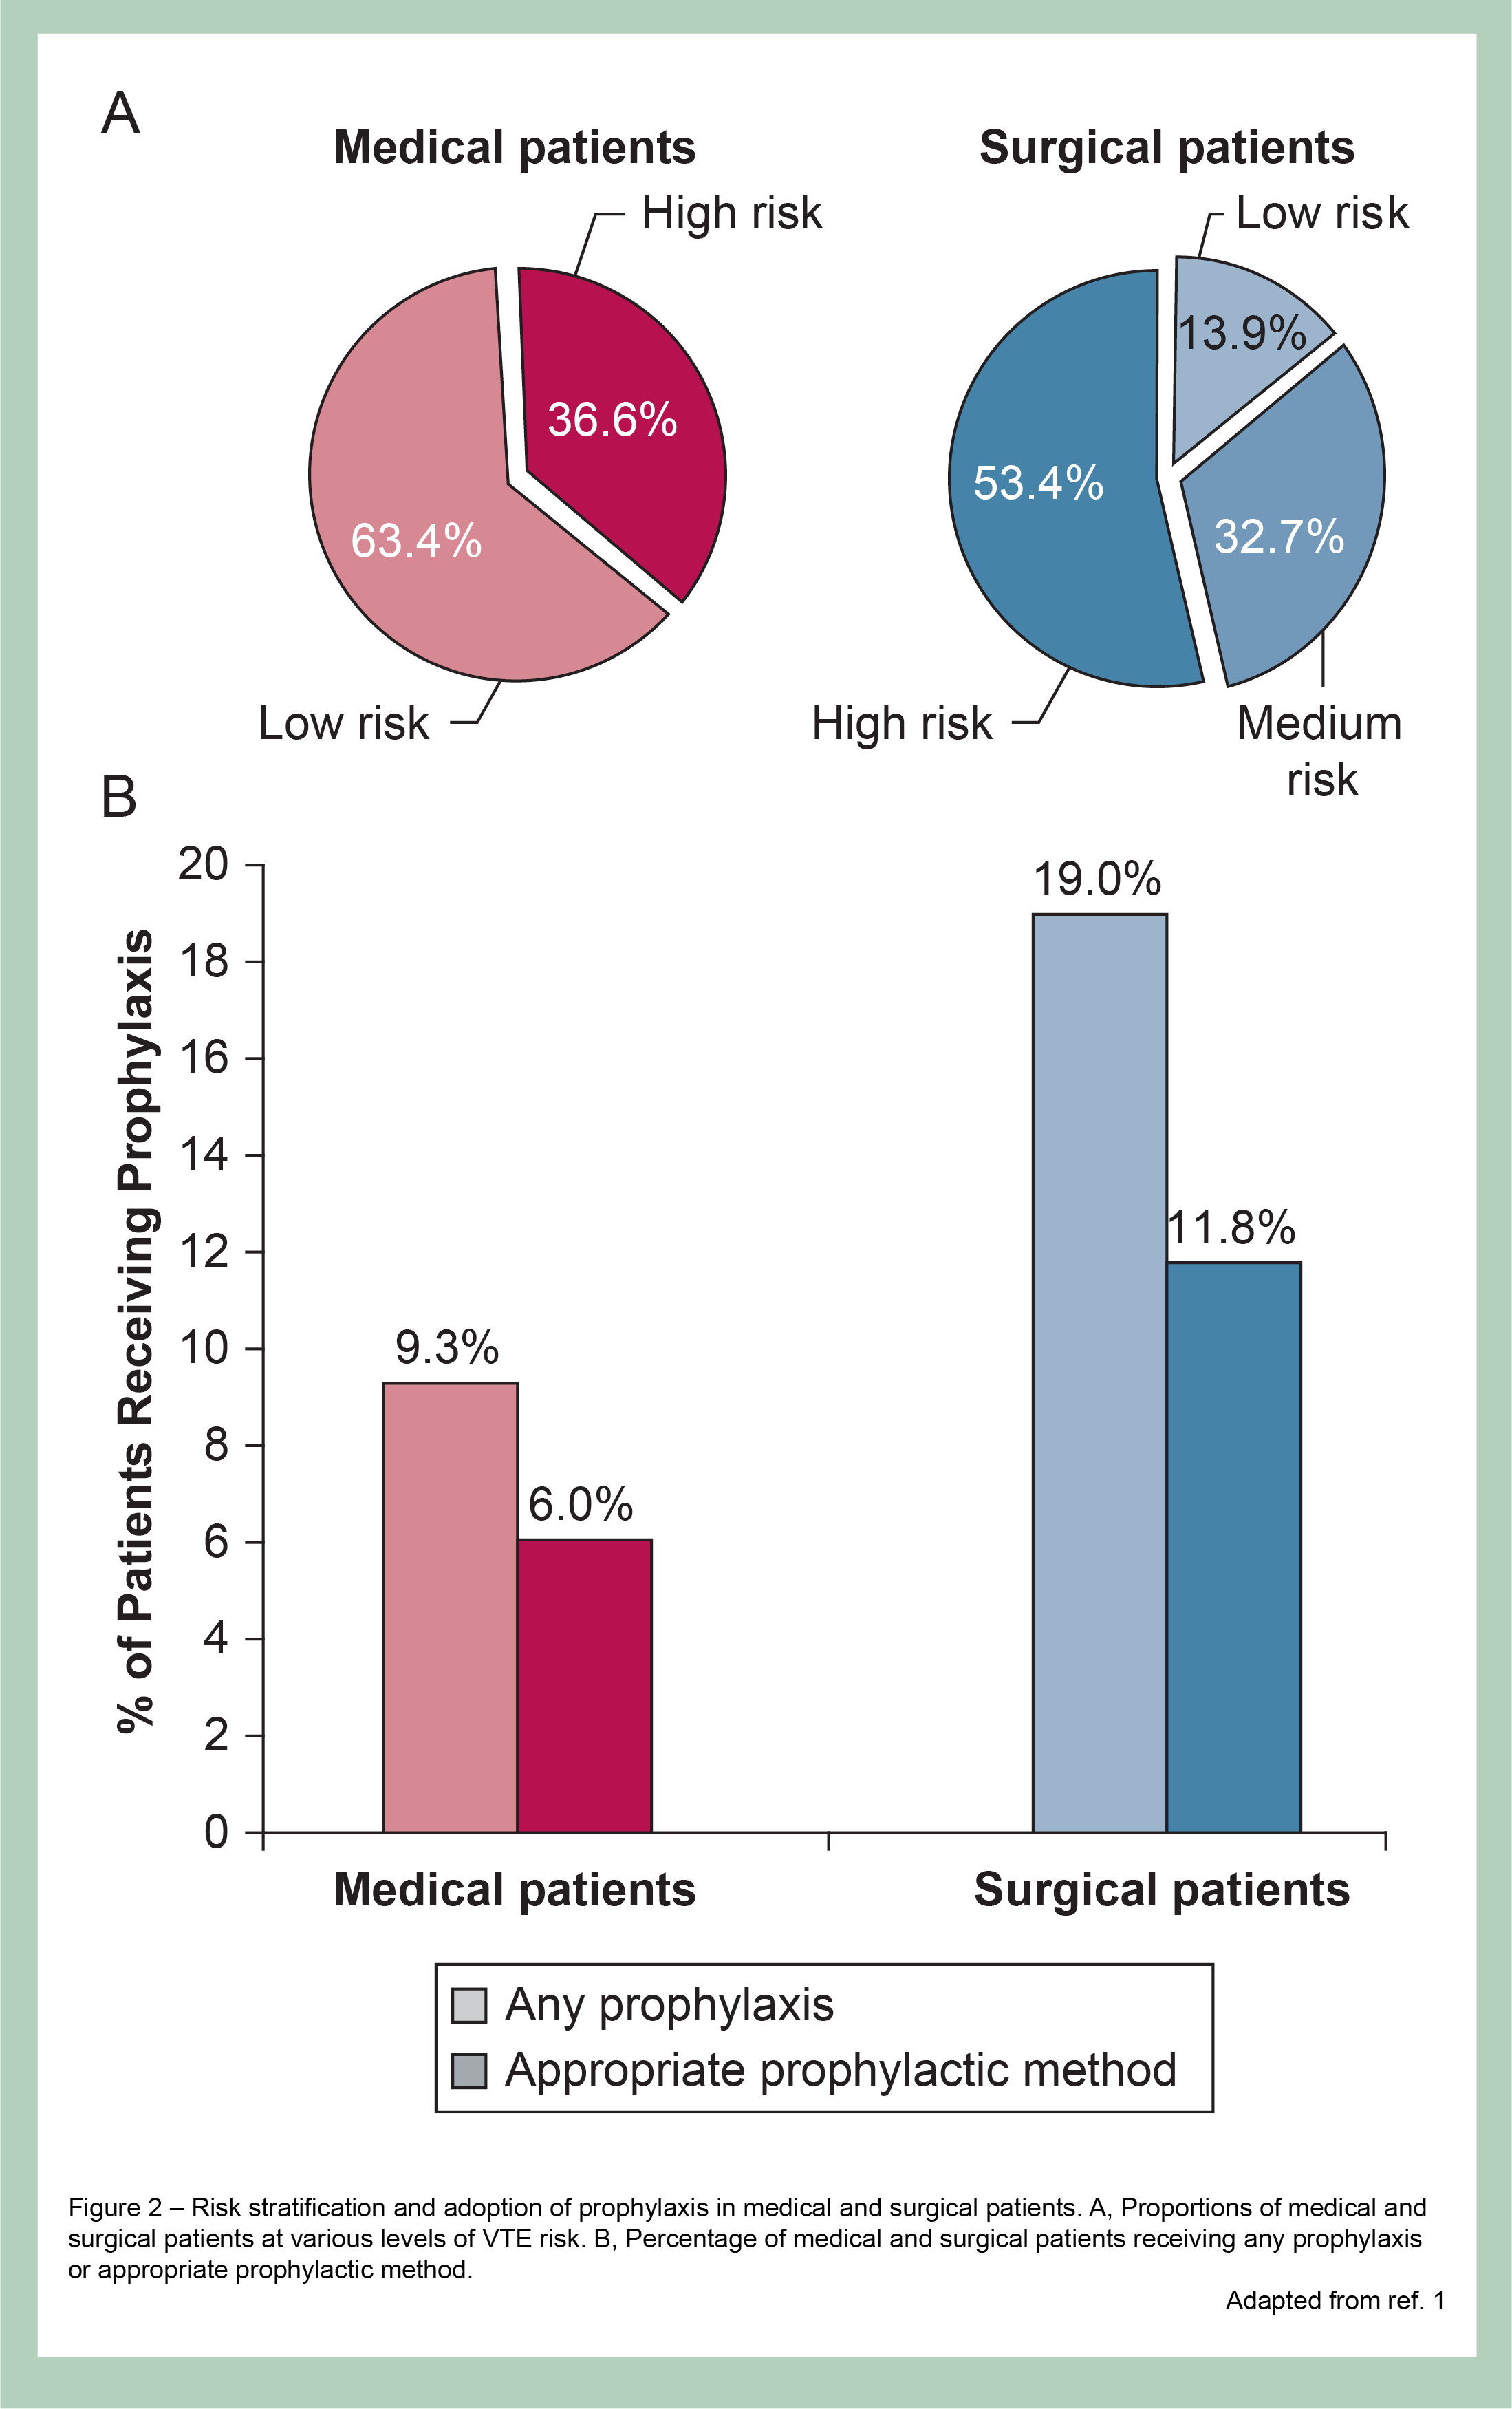 Σε μελέτη με 6986 χειρουργικούς ασθενείς, μόνο 11,8% έλαβαν την κατάλληλη θρομβοπροφύλαξη.